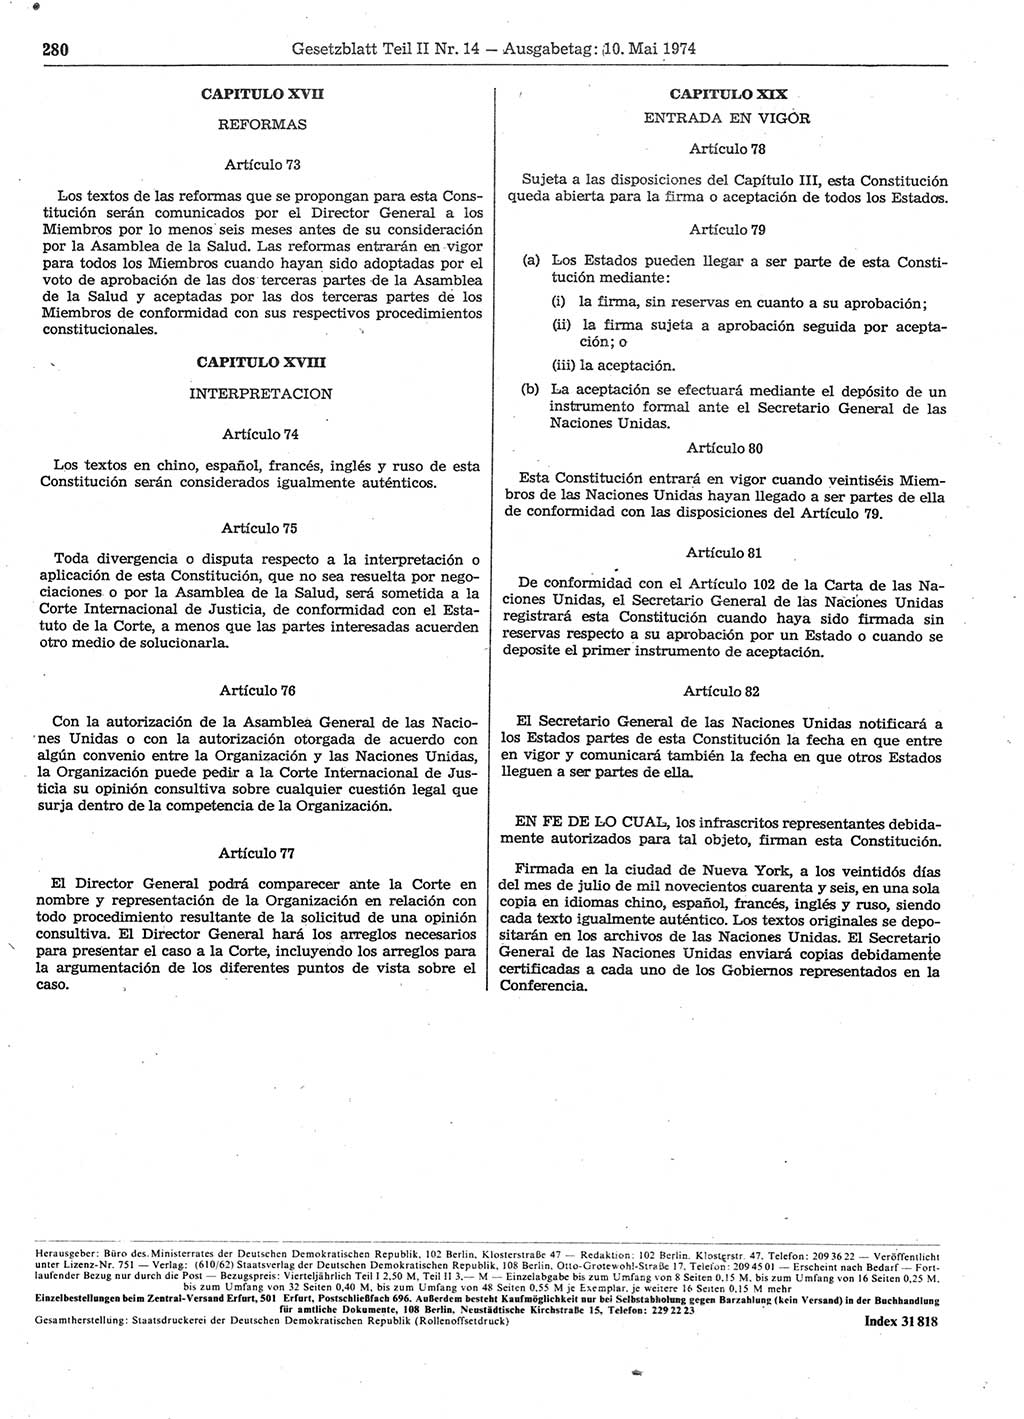 Gesetzblatt (GBl.) der Deutschen Demokratischen Republik (DDR) Teil ⅠⅠ 1974, Seite 280 (GBl. DDR ⅠⅠ 1974, S. 280)